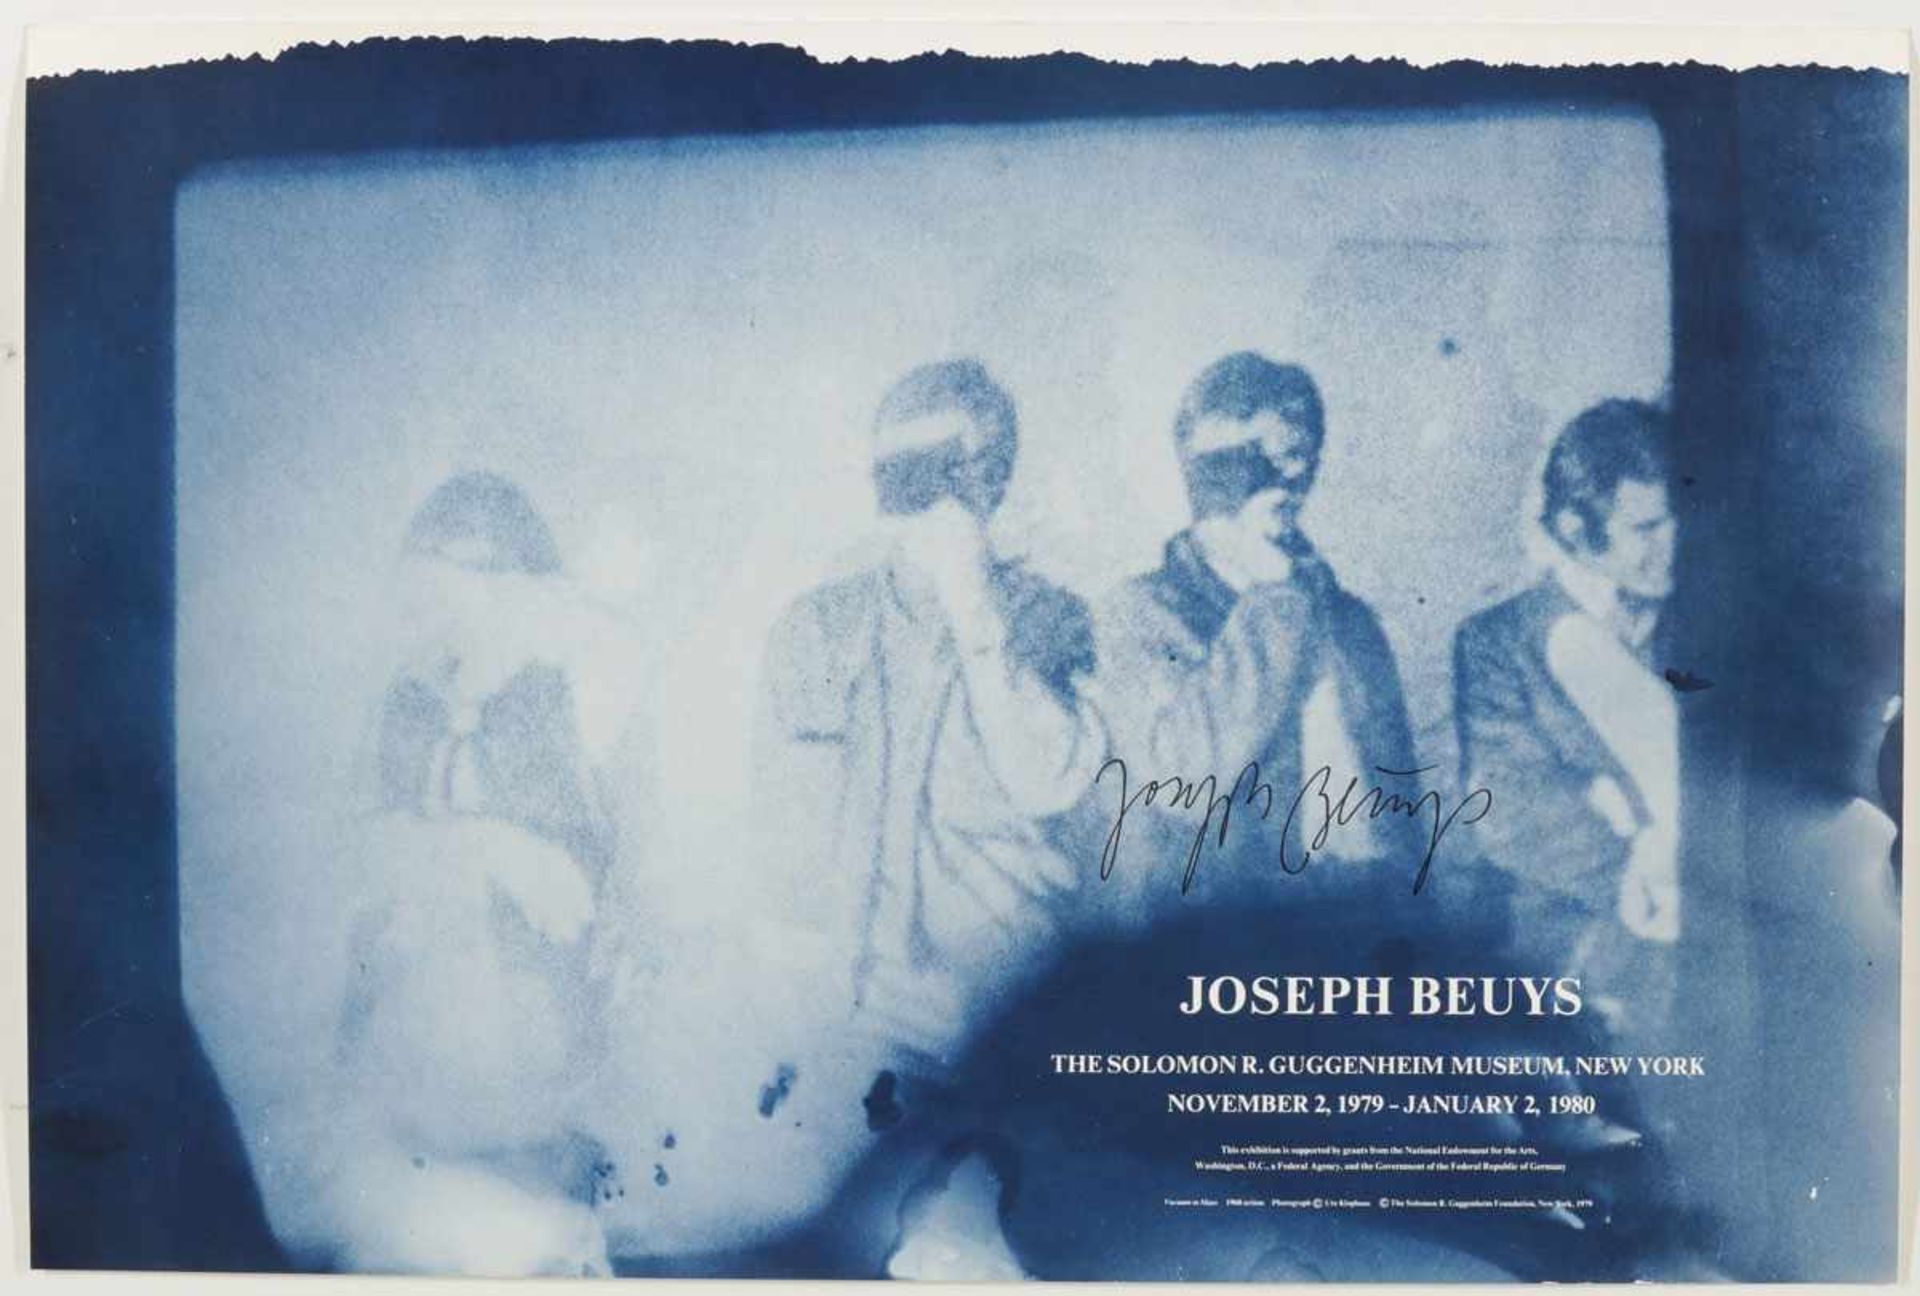 Joseph Beuys1921 Krefeld - 1986 Düsseldorf - Plakat zur Ausstellung im Solomon R. Guggenheim Museum,